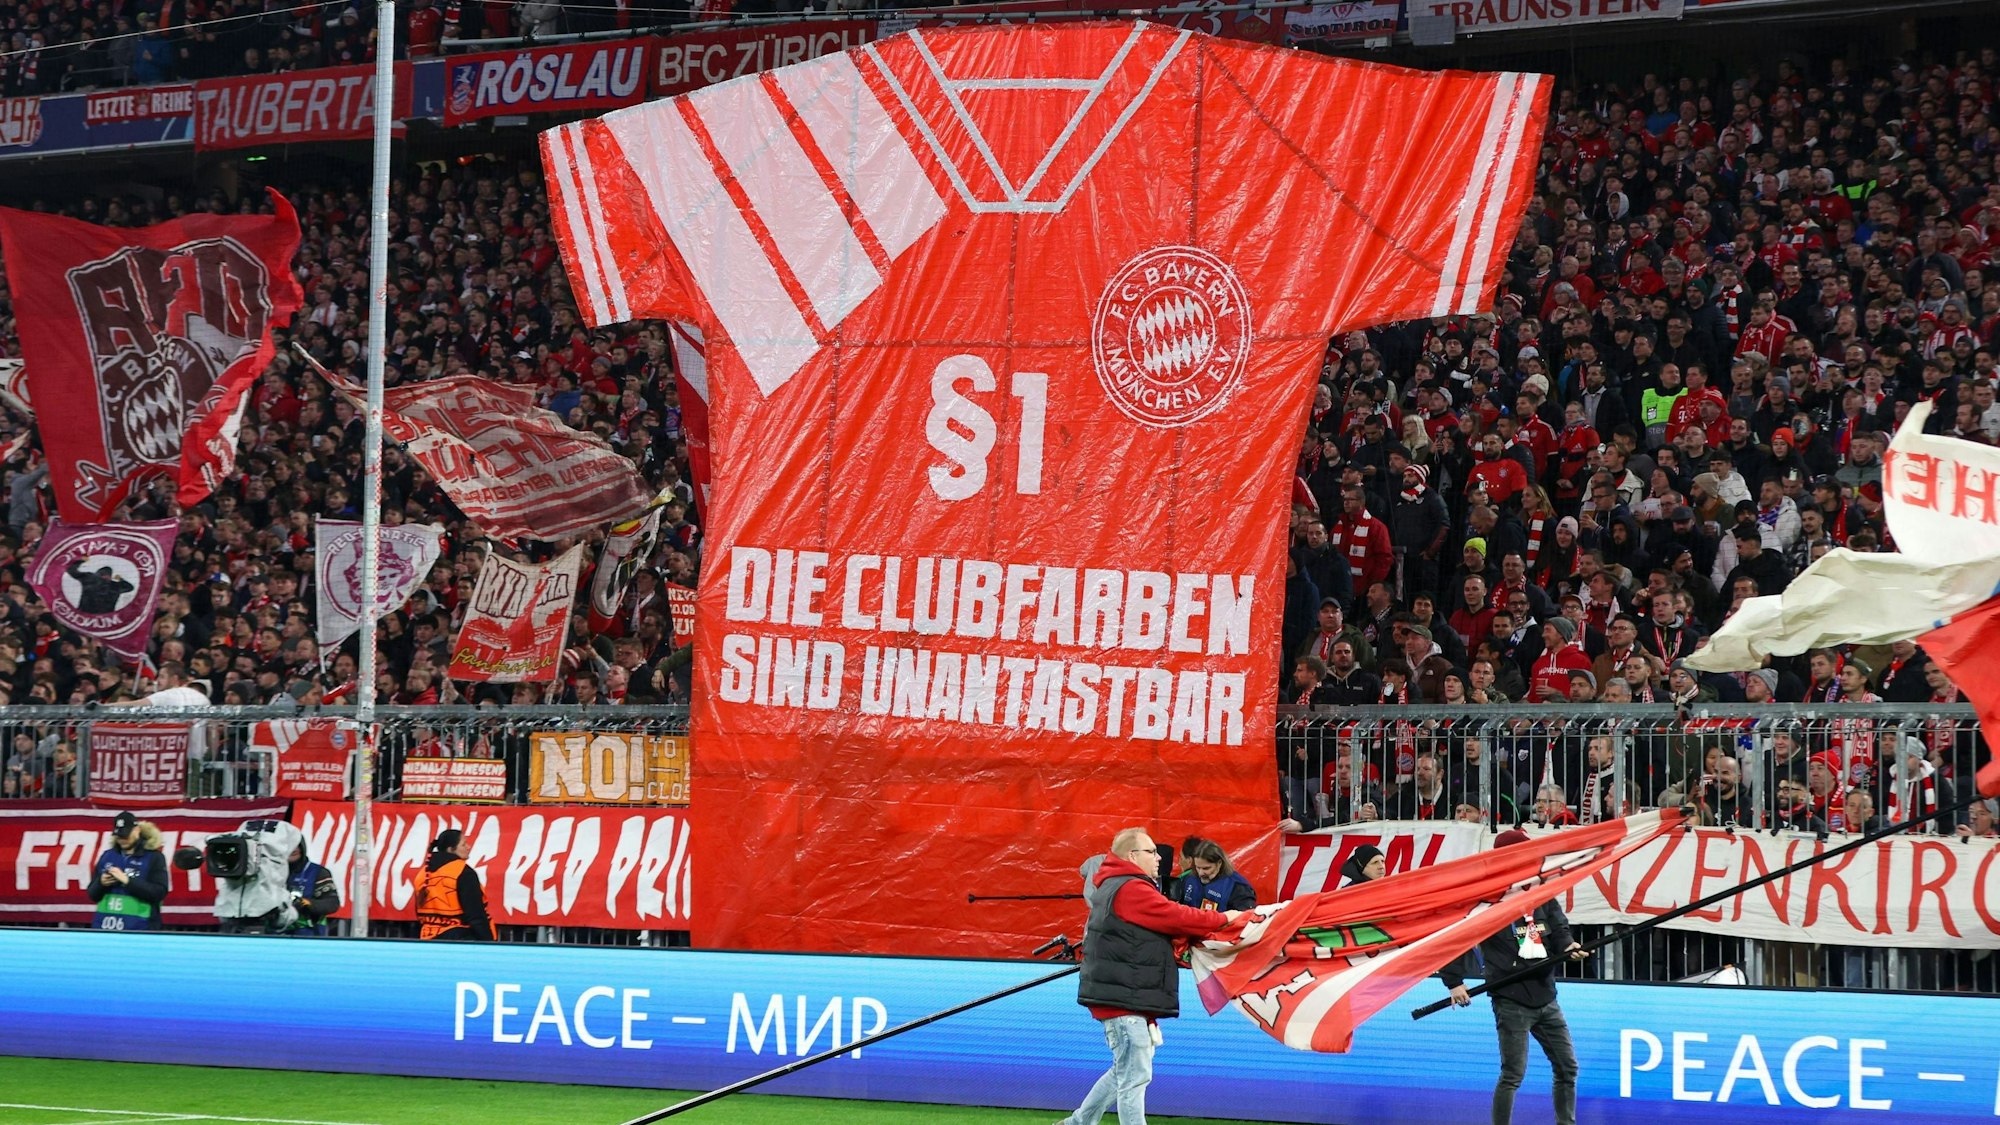 Trikot-Protest von den Fans des FC Bayern München. „Die Clubfarben sind unantastbar“ steht auf einem überlebensgroßen, rot-weißen Trikot auf der Südtribüne zu lesen.